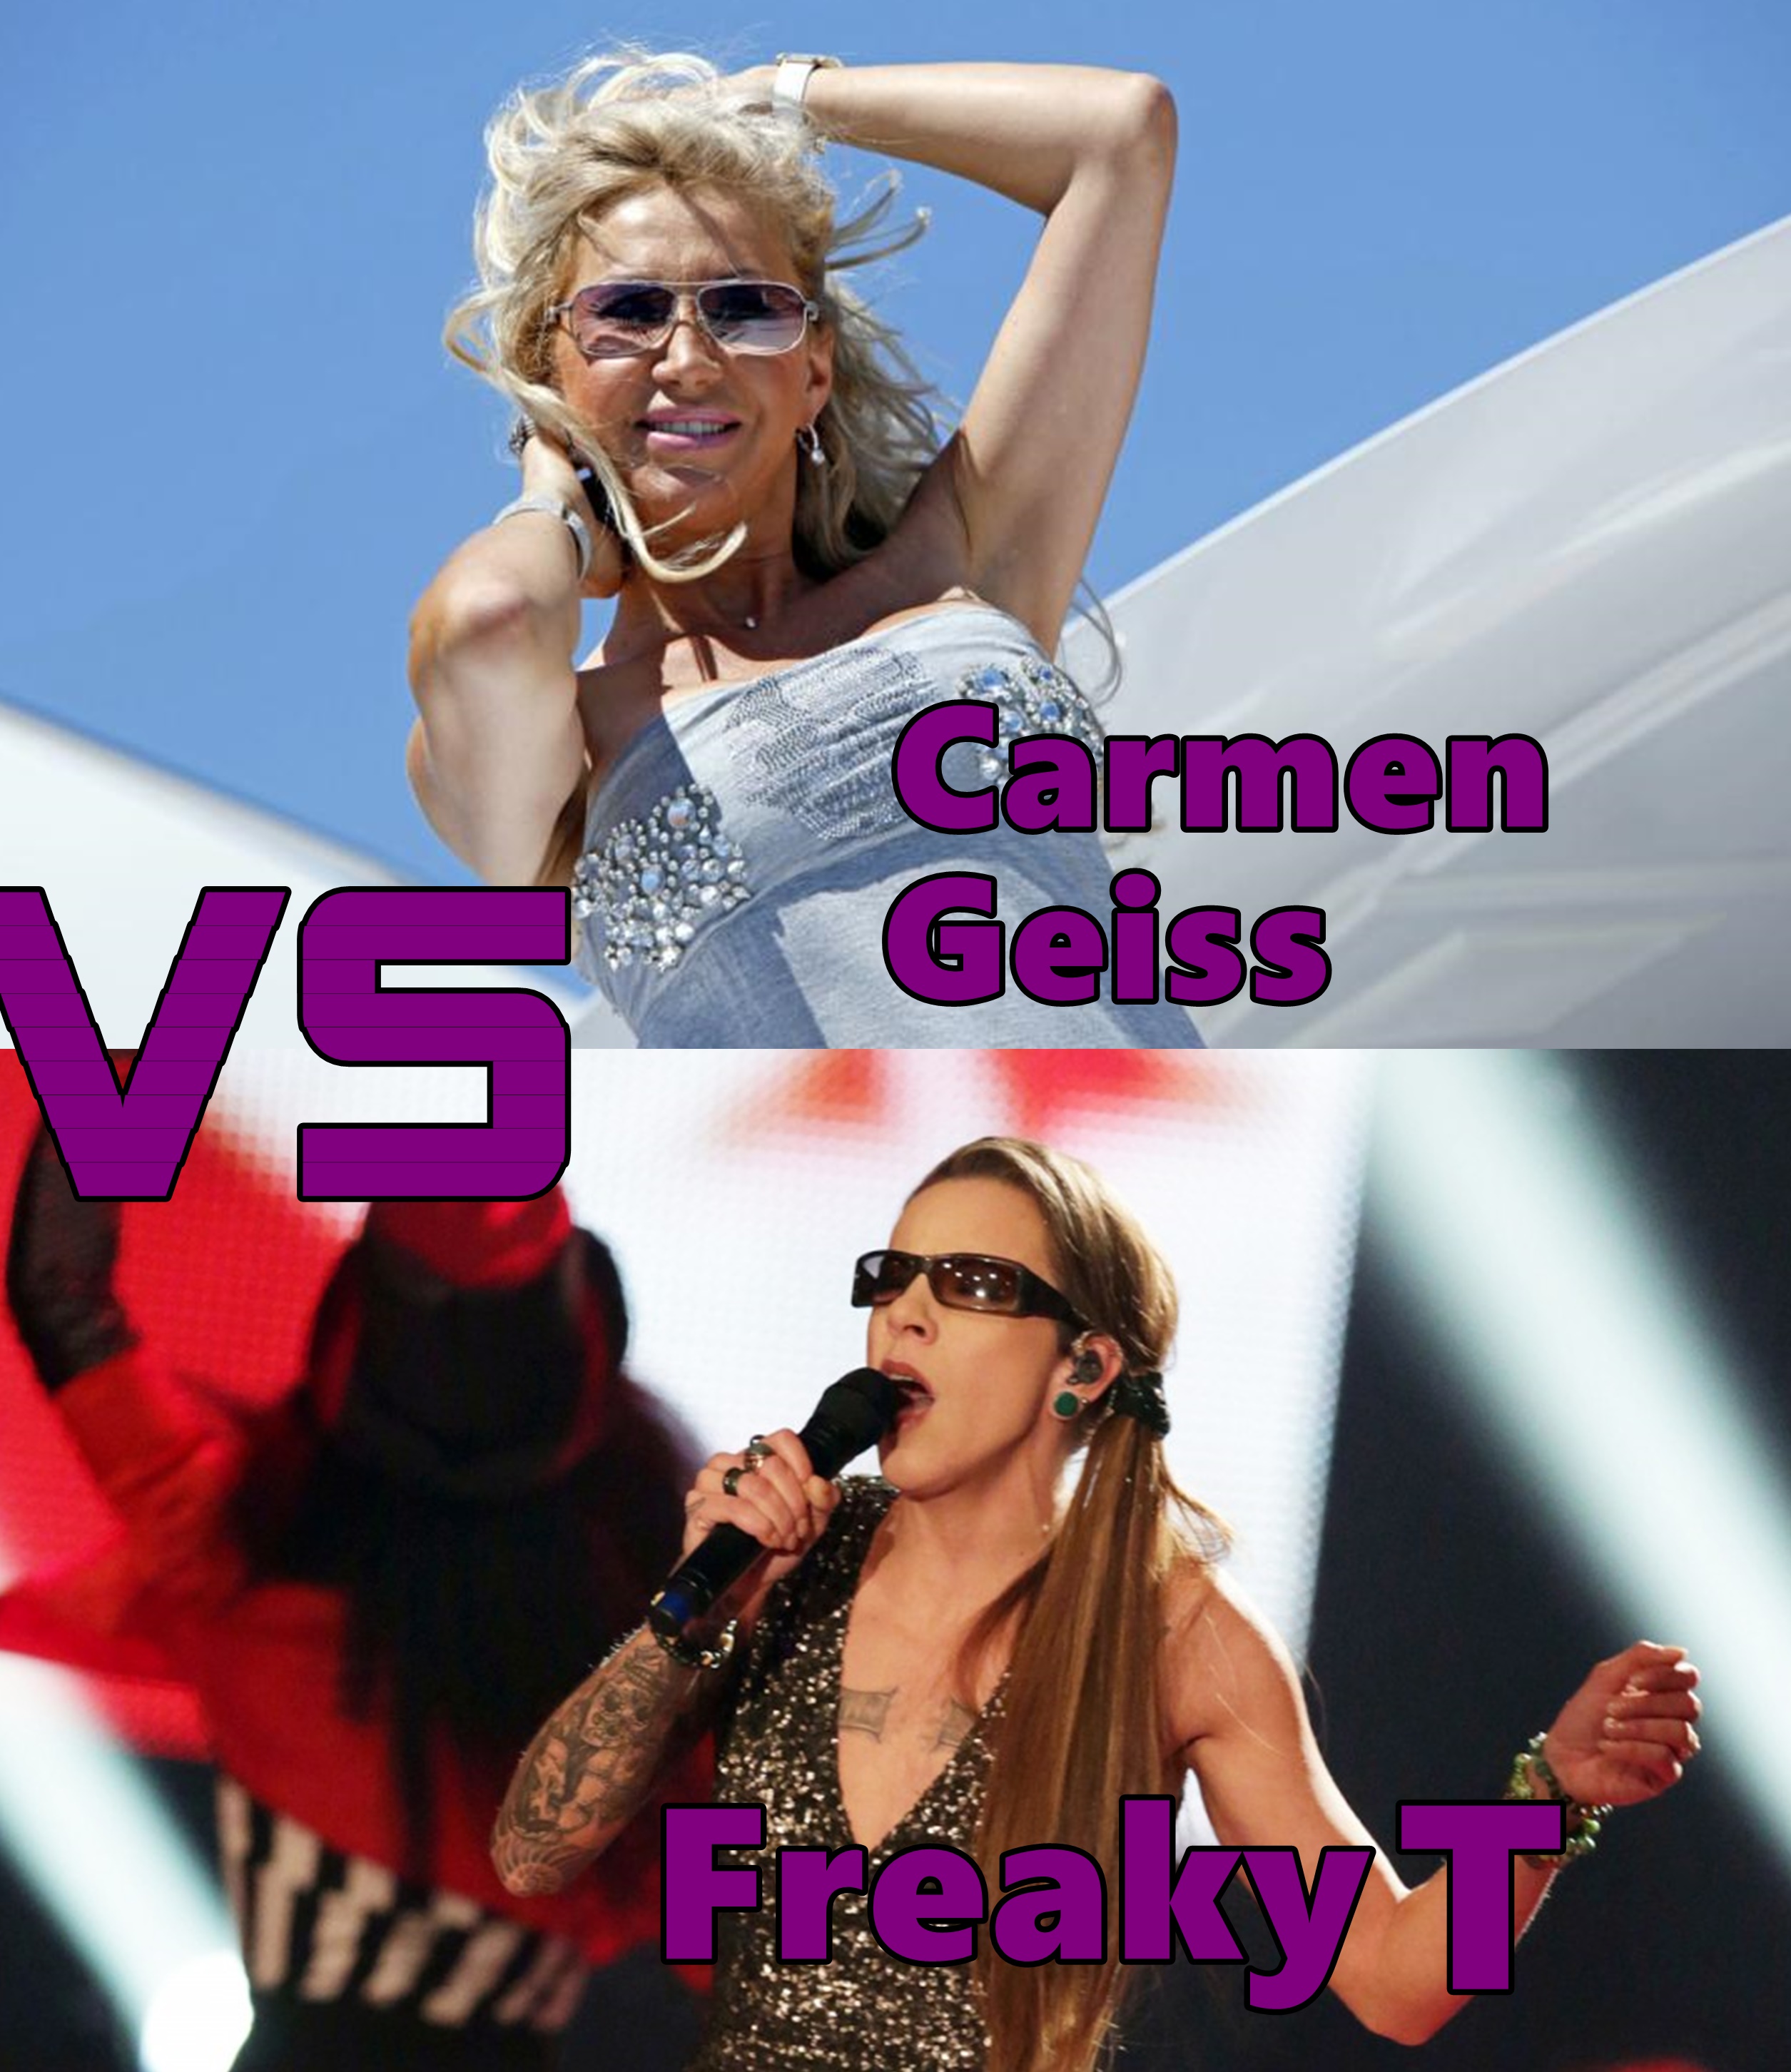 The Voice Of Germany - Die Battles 
Carmen Geiss vs. Freaky T